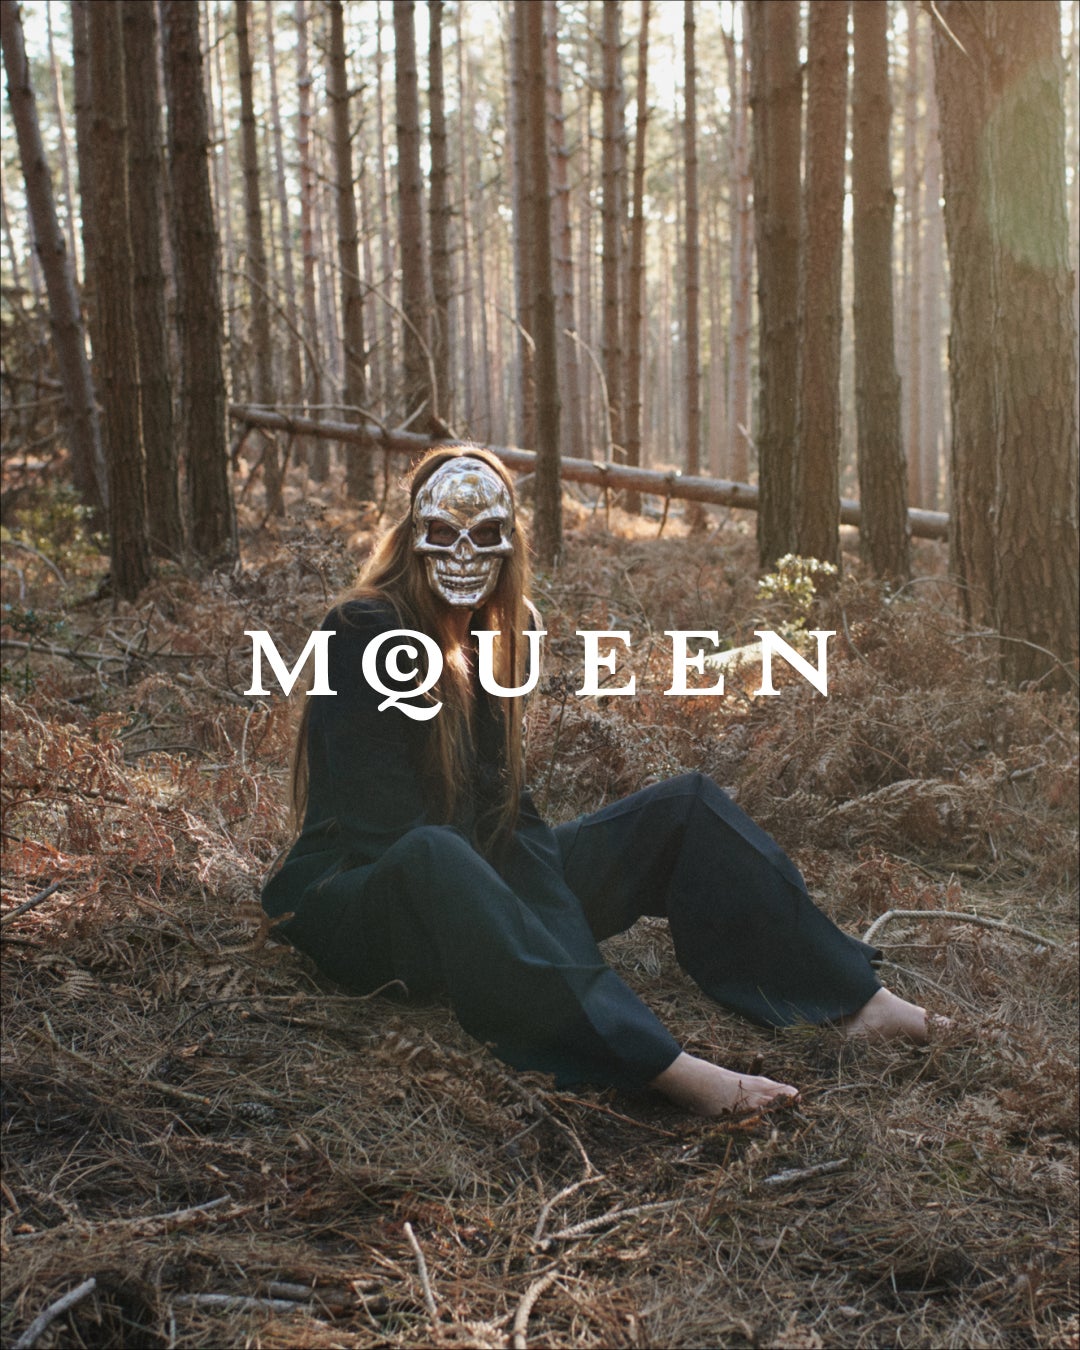 【Alexander McQueen】クリエイティブ・ディレクター、ショーン・マクギアーによるマックイーン